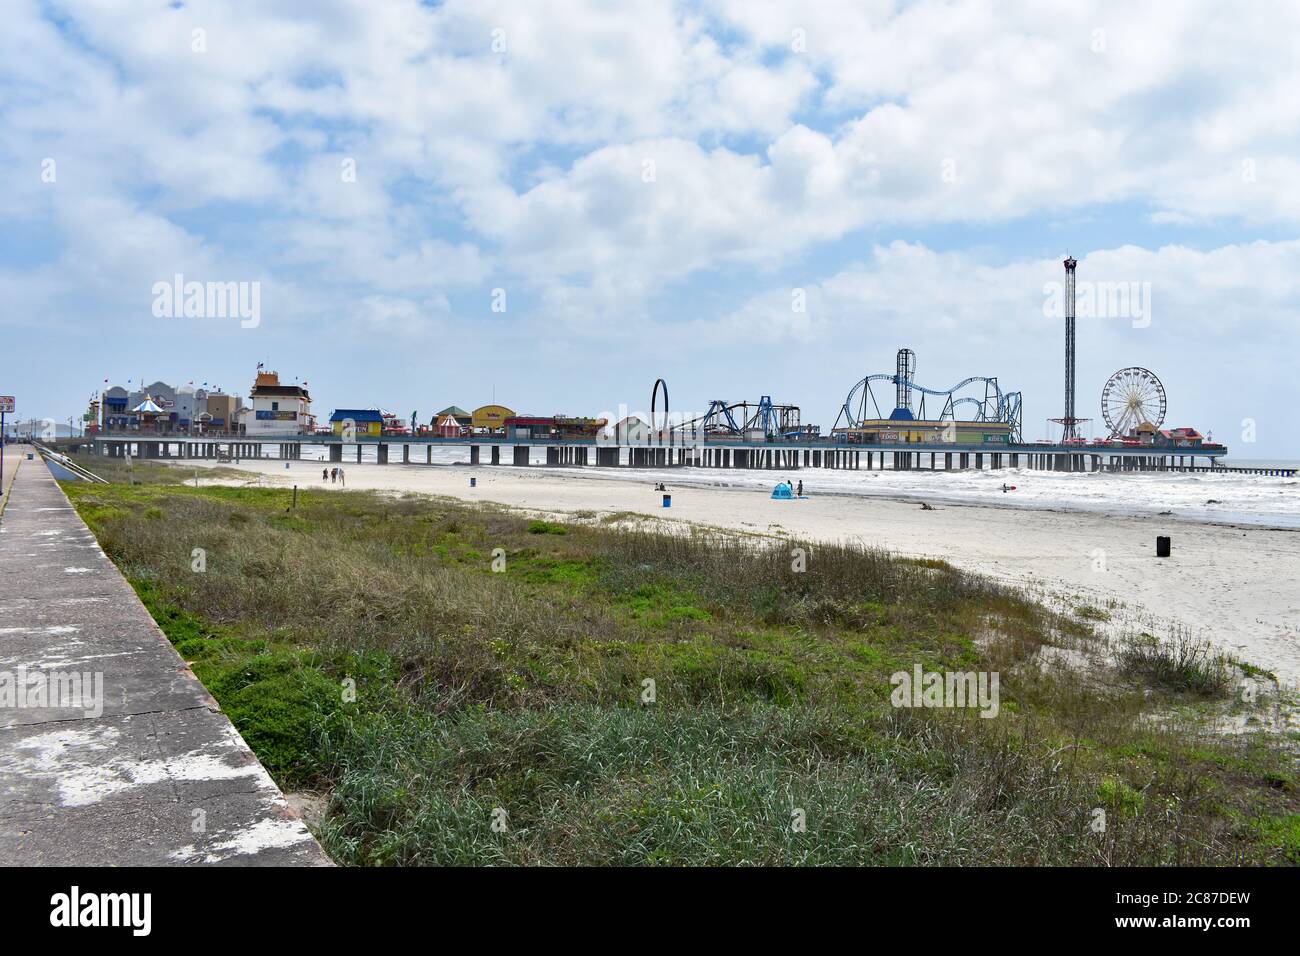 Mirando a lo largo de la playa de Galveston desde Seawall Boulevard con la longitud completa del muelle de placer histórico de Galveston Island extendiéndose hacia el agua. Foto de stock